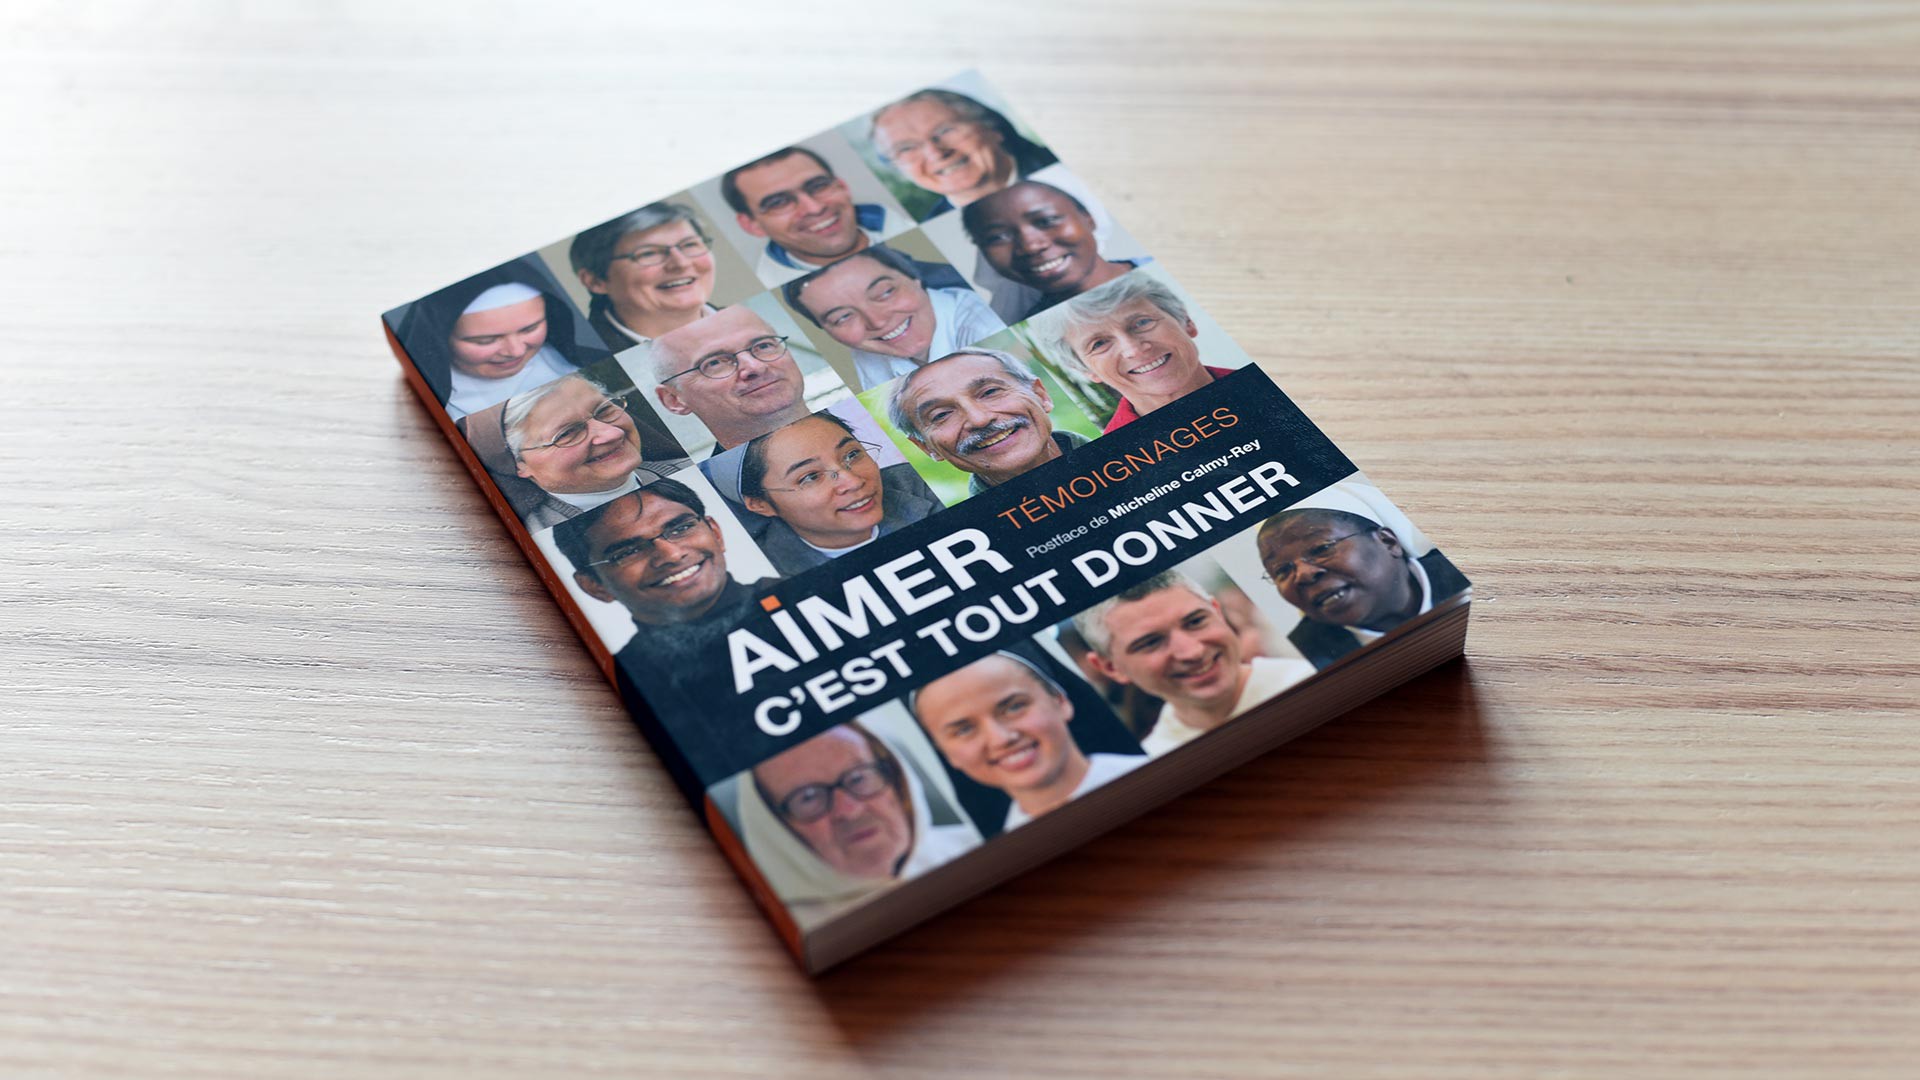 Le livre "Aimer c'est tout donner" a été imprimé à des millions d'exemplaires (Photo:Pierre Pistoletti)